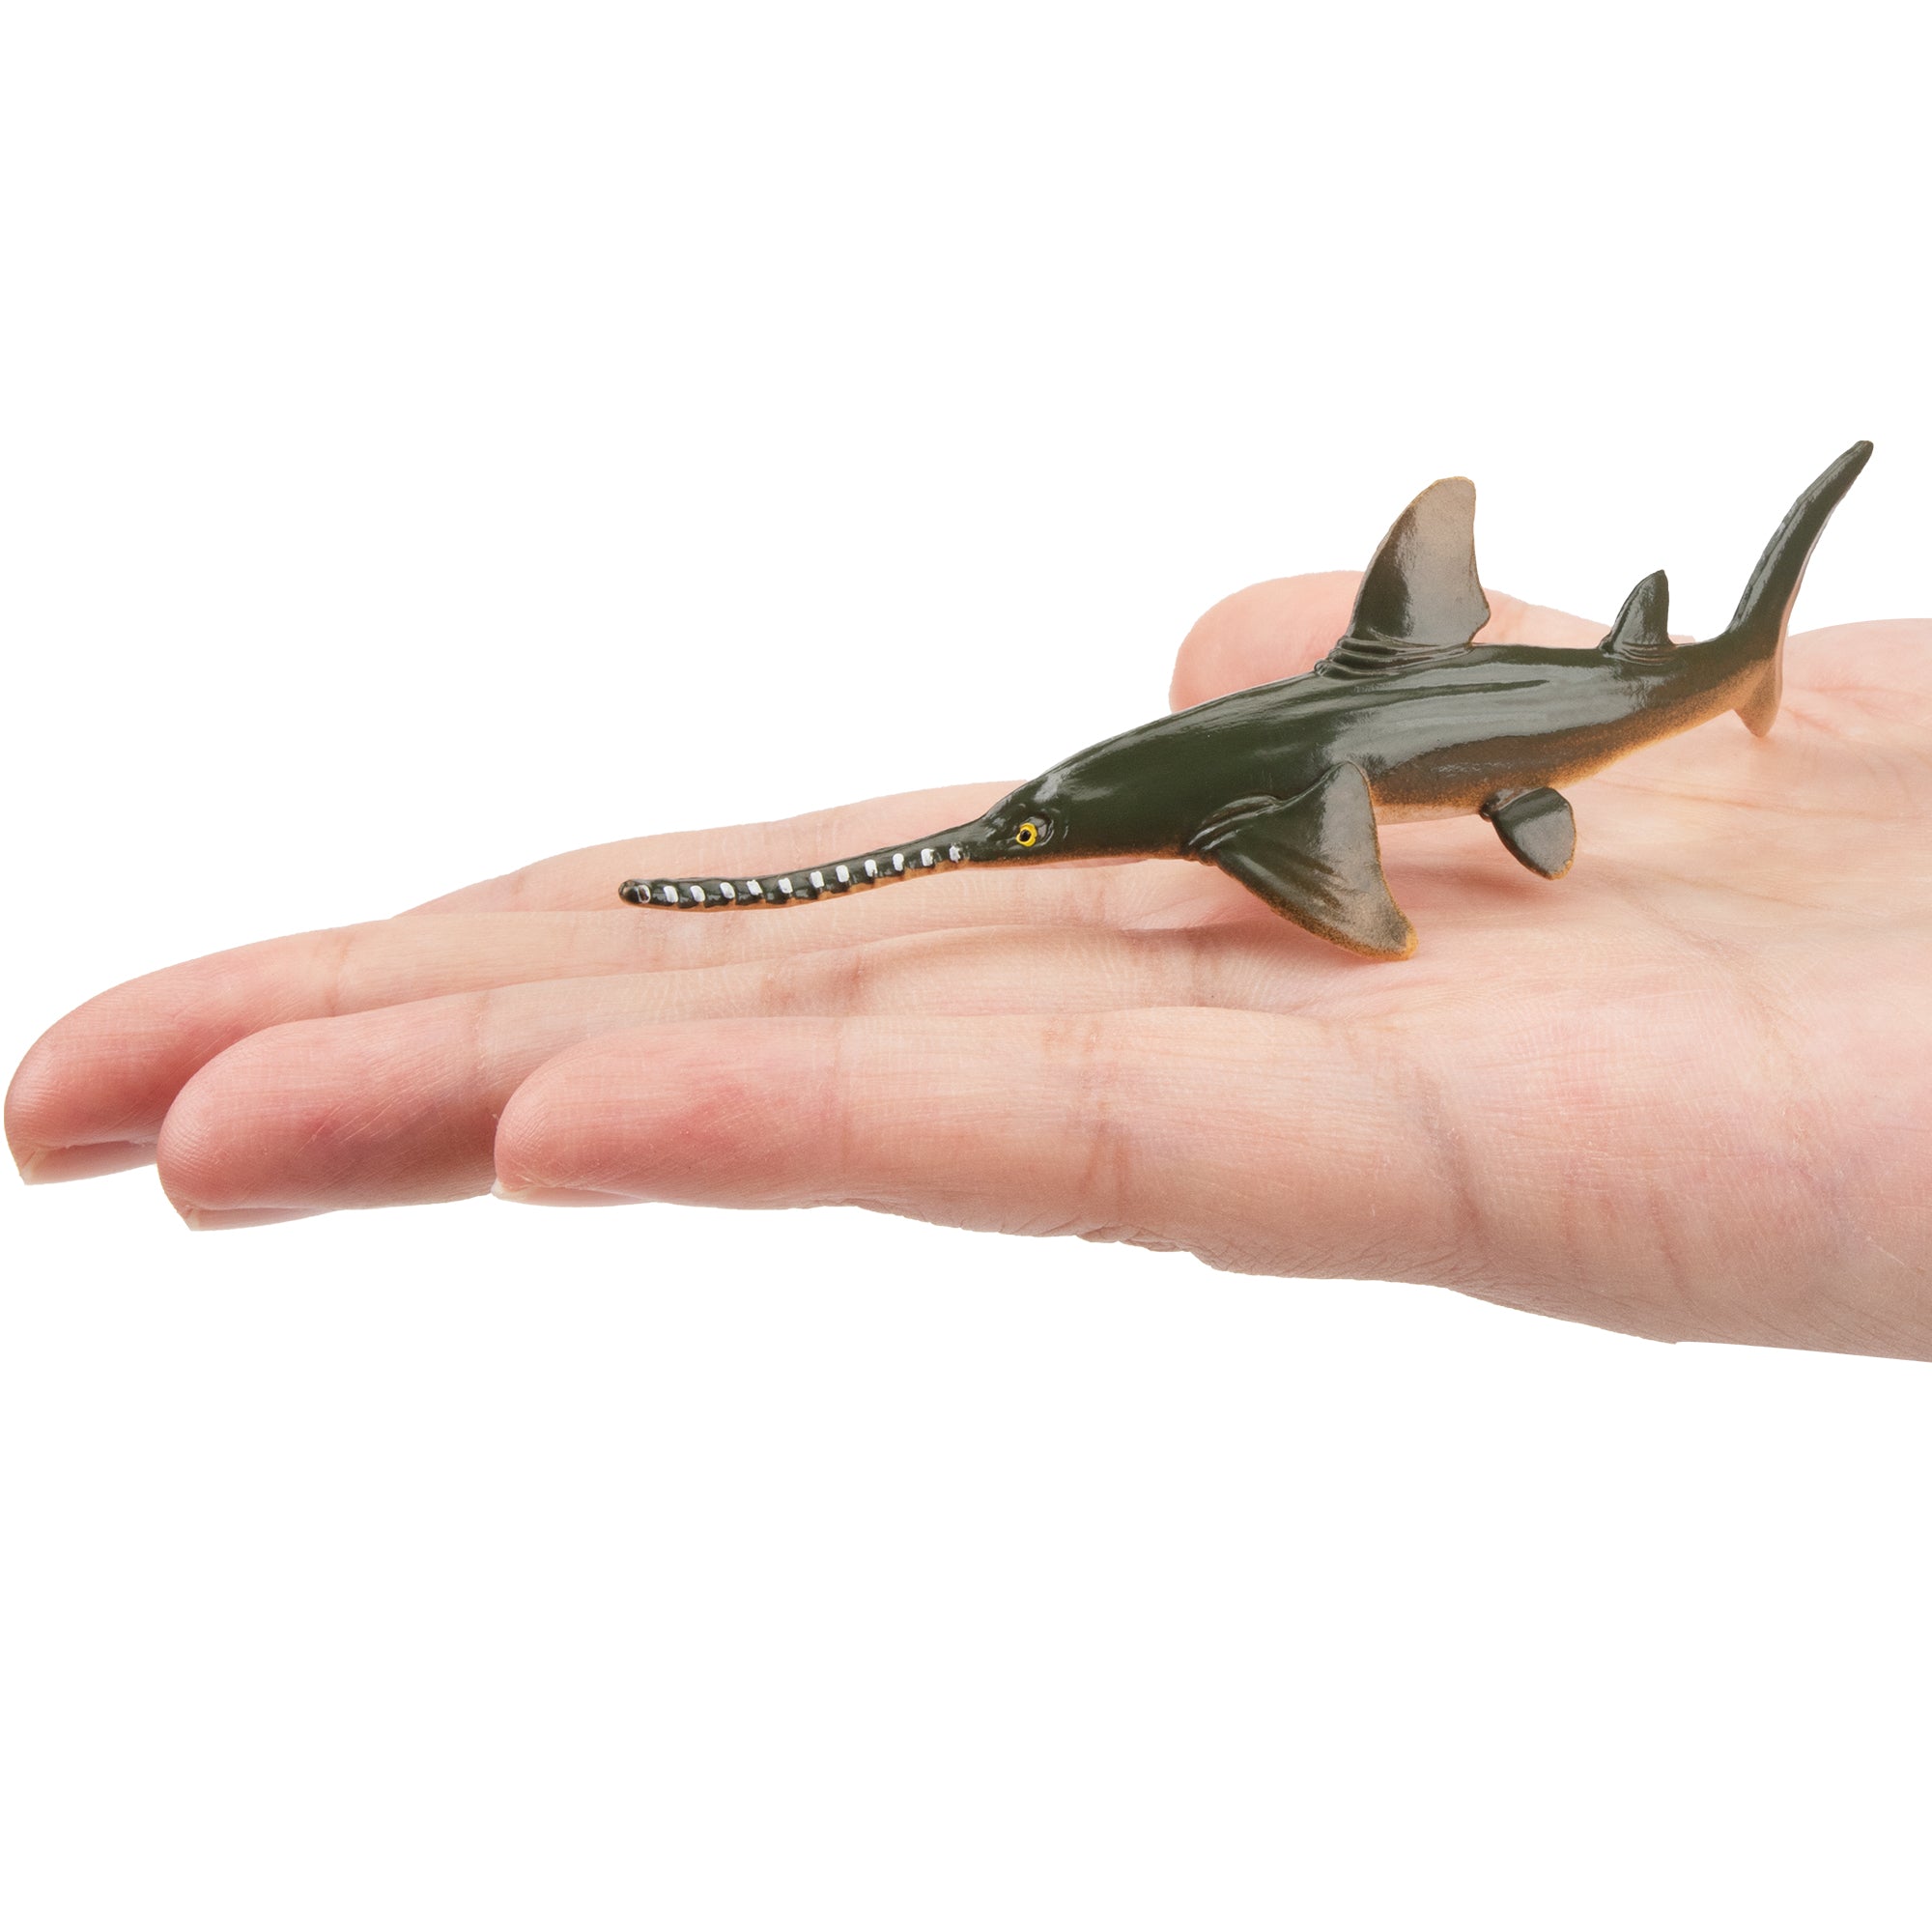 Toymany Sawfish Figurine Toy-on hand